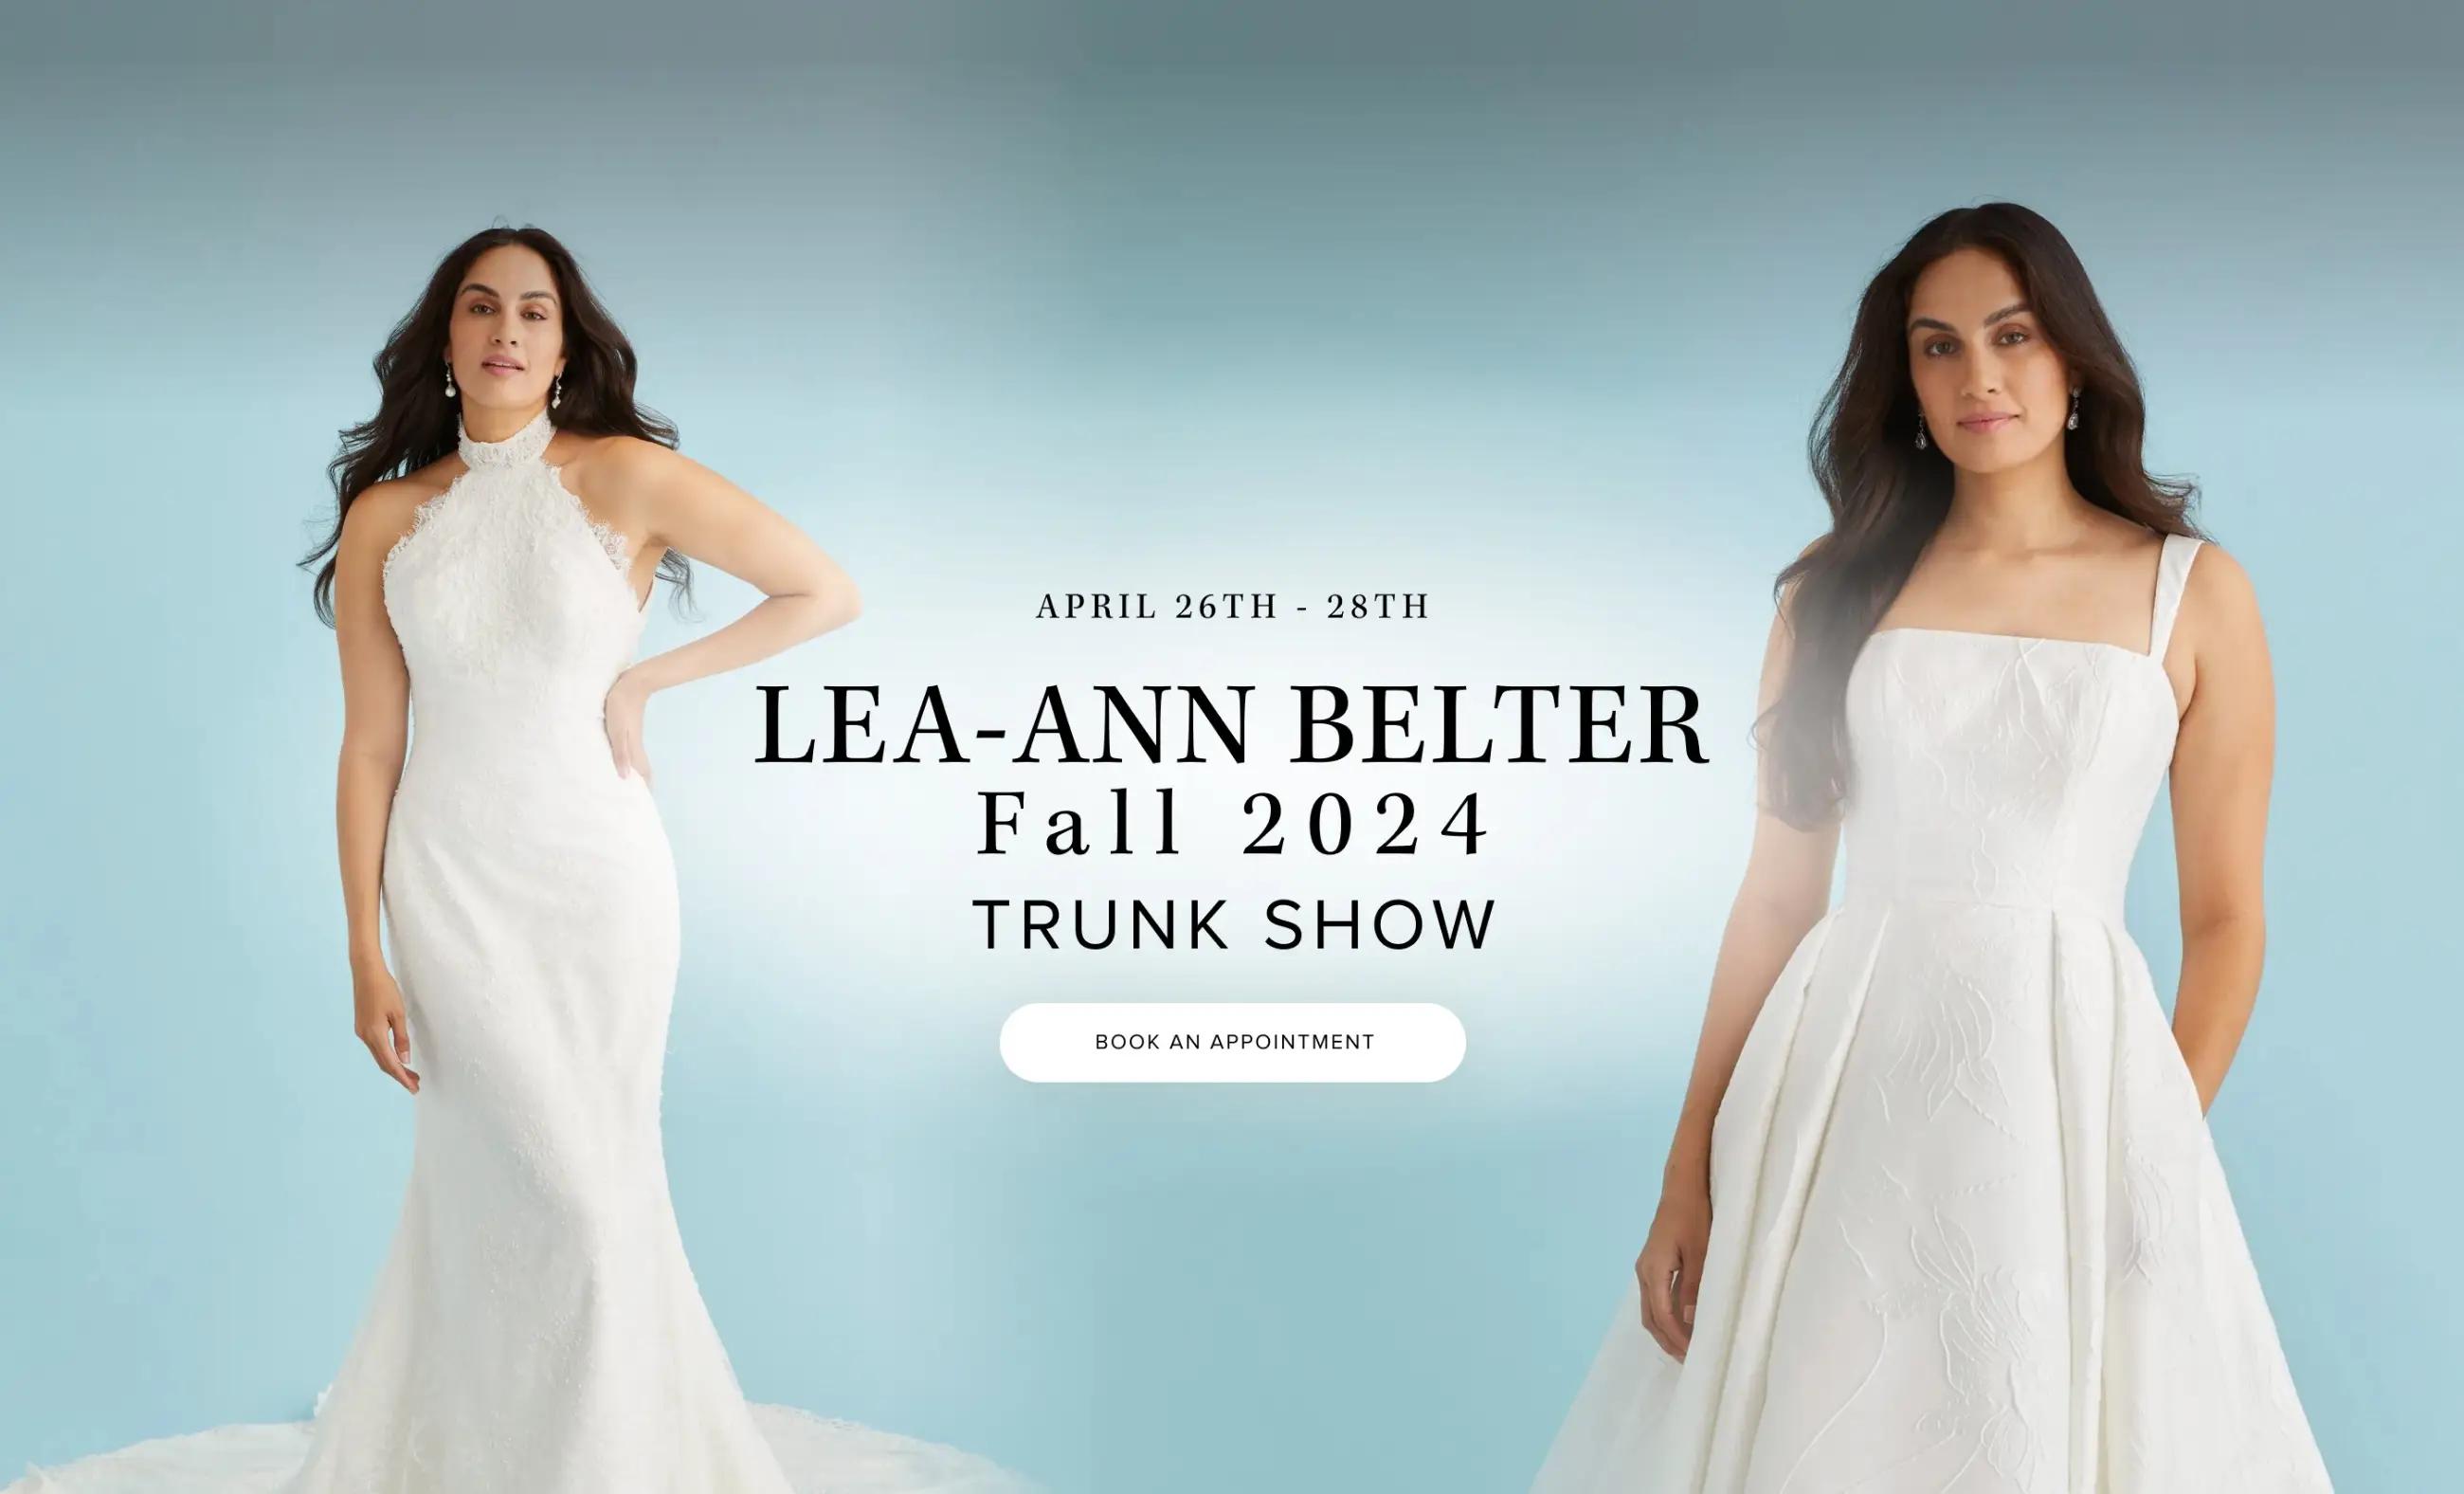 Lea-Ann Belter Fall 2024 Trunk Show Banner Desktop